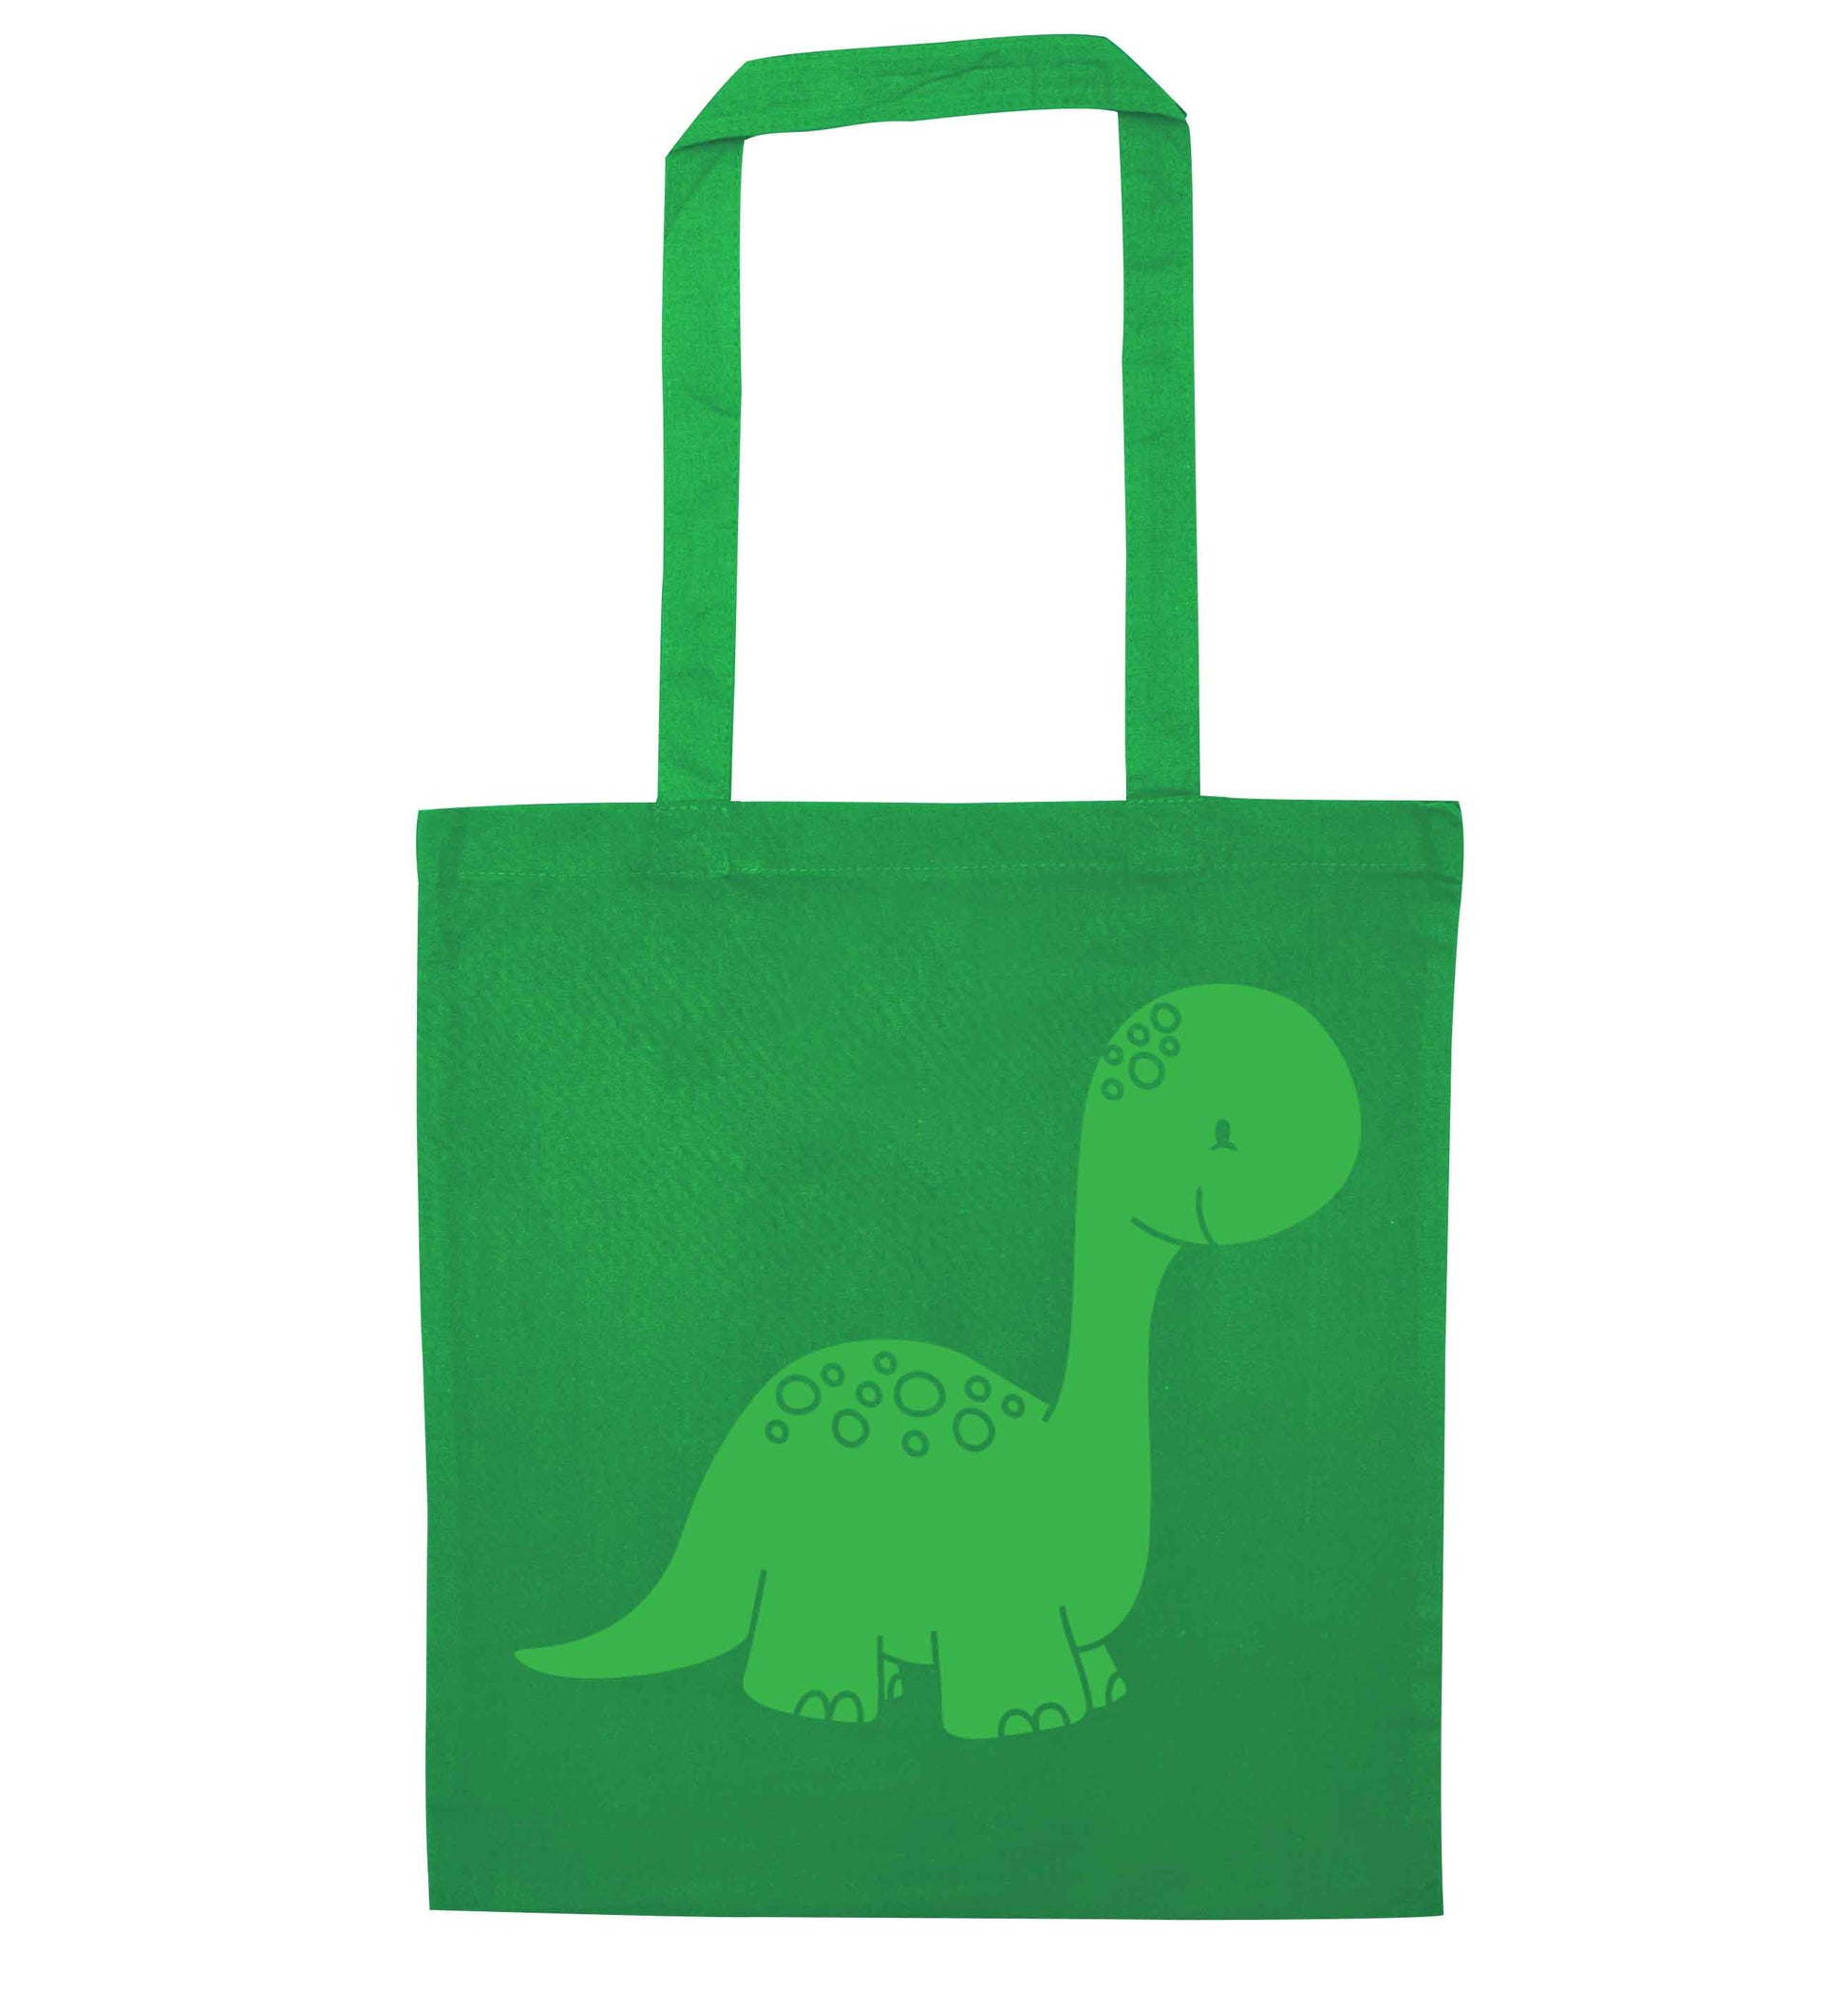 Dinosaur illustration green tote bag